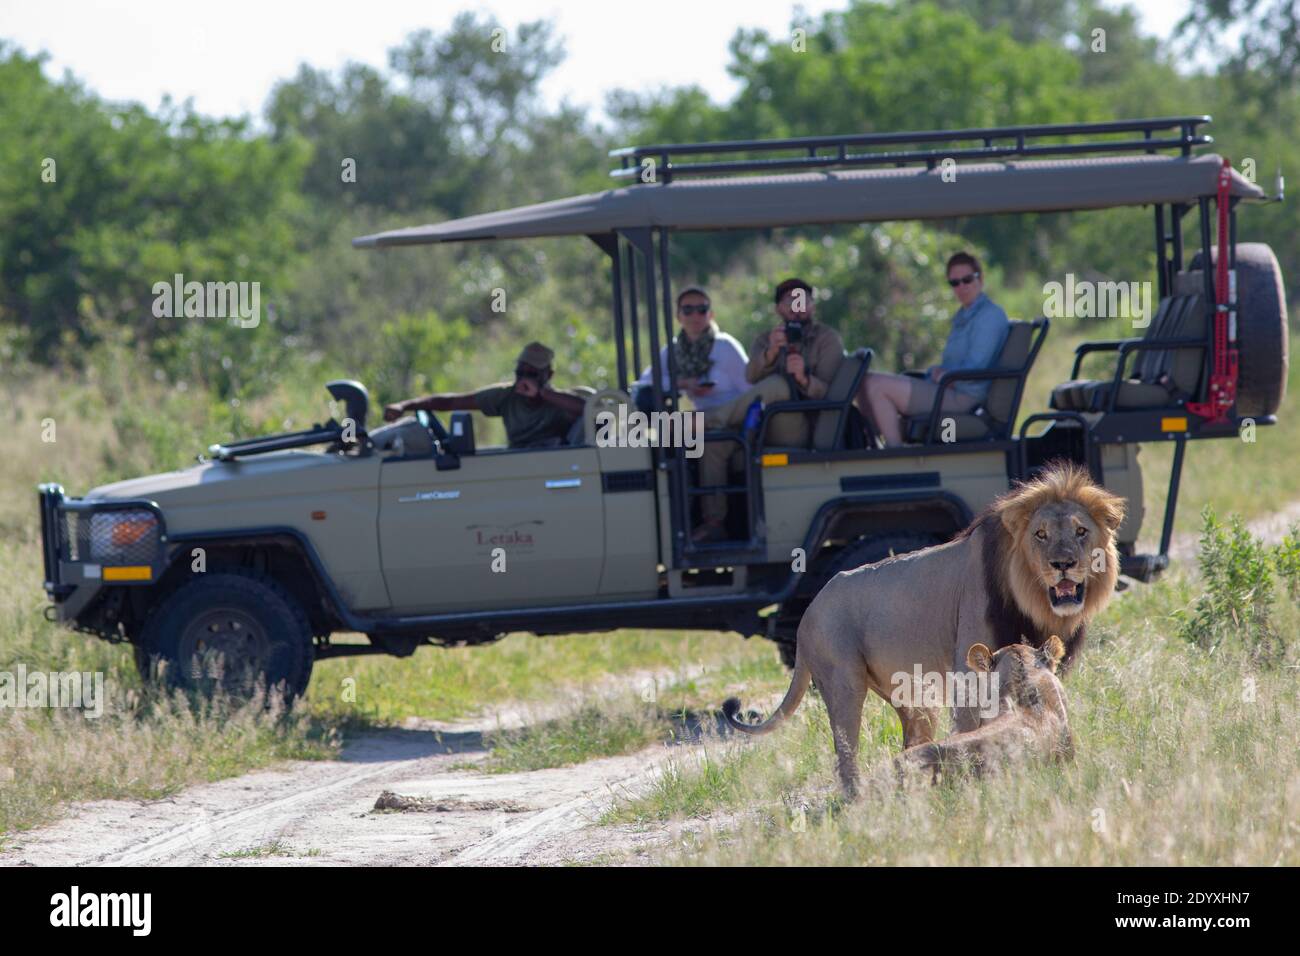 Lions africani (Panthera leo). In coppia, accanto a un veicolo a 4 ruote motrici, con osservazione della fauna selvatica in safari. Meraviglie da vedere. Okavango Botswana. Foto Stock